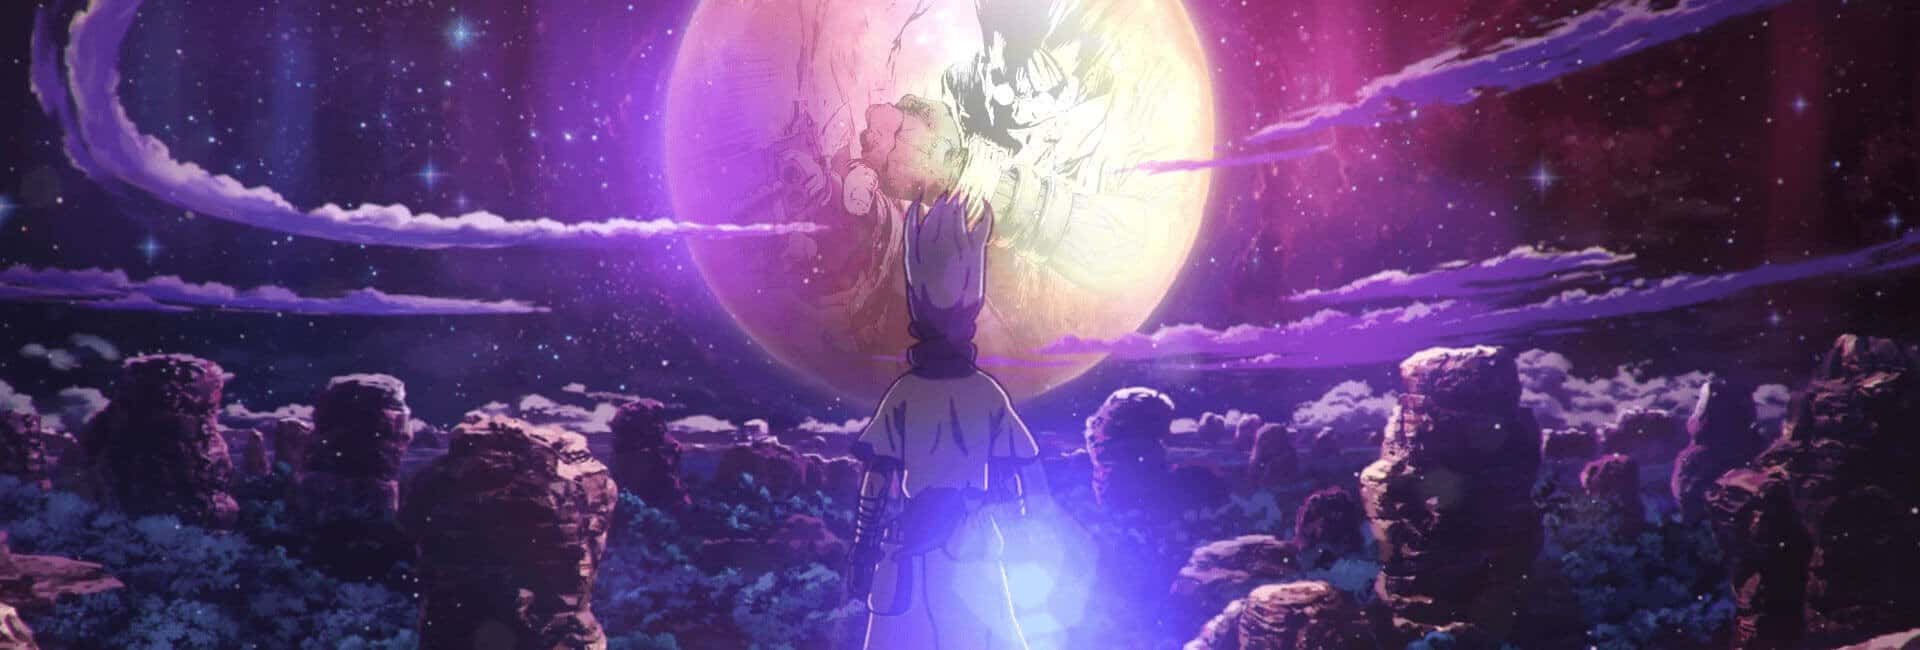 na imagem senku protagonista da história de Dr.Stone olha a lua em um deu estrelado, no reflexo dela tem um desenho do trigun por boichi